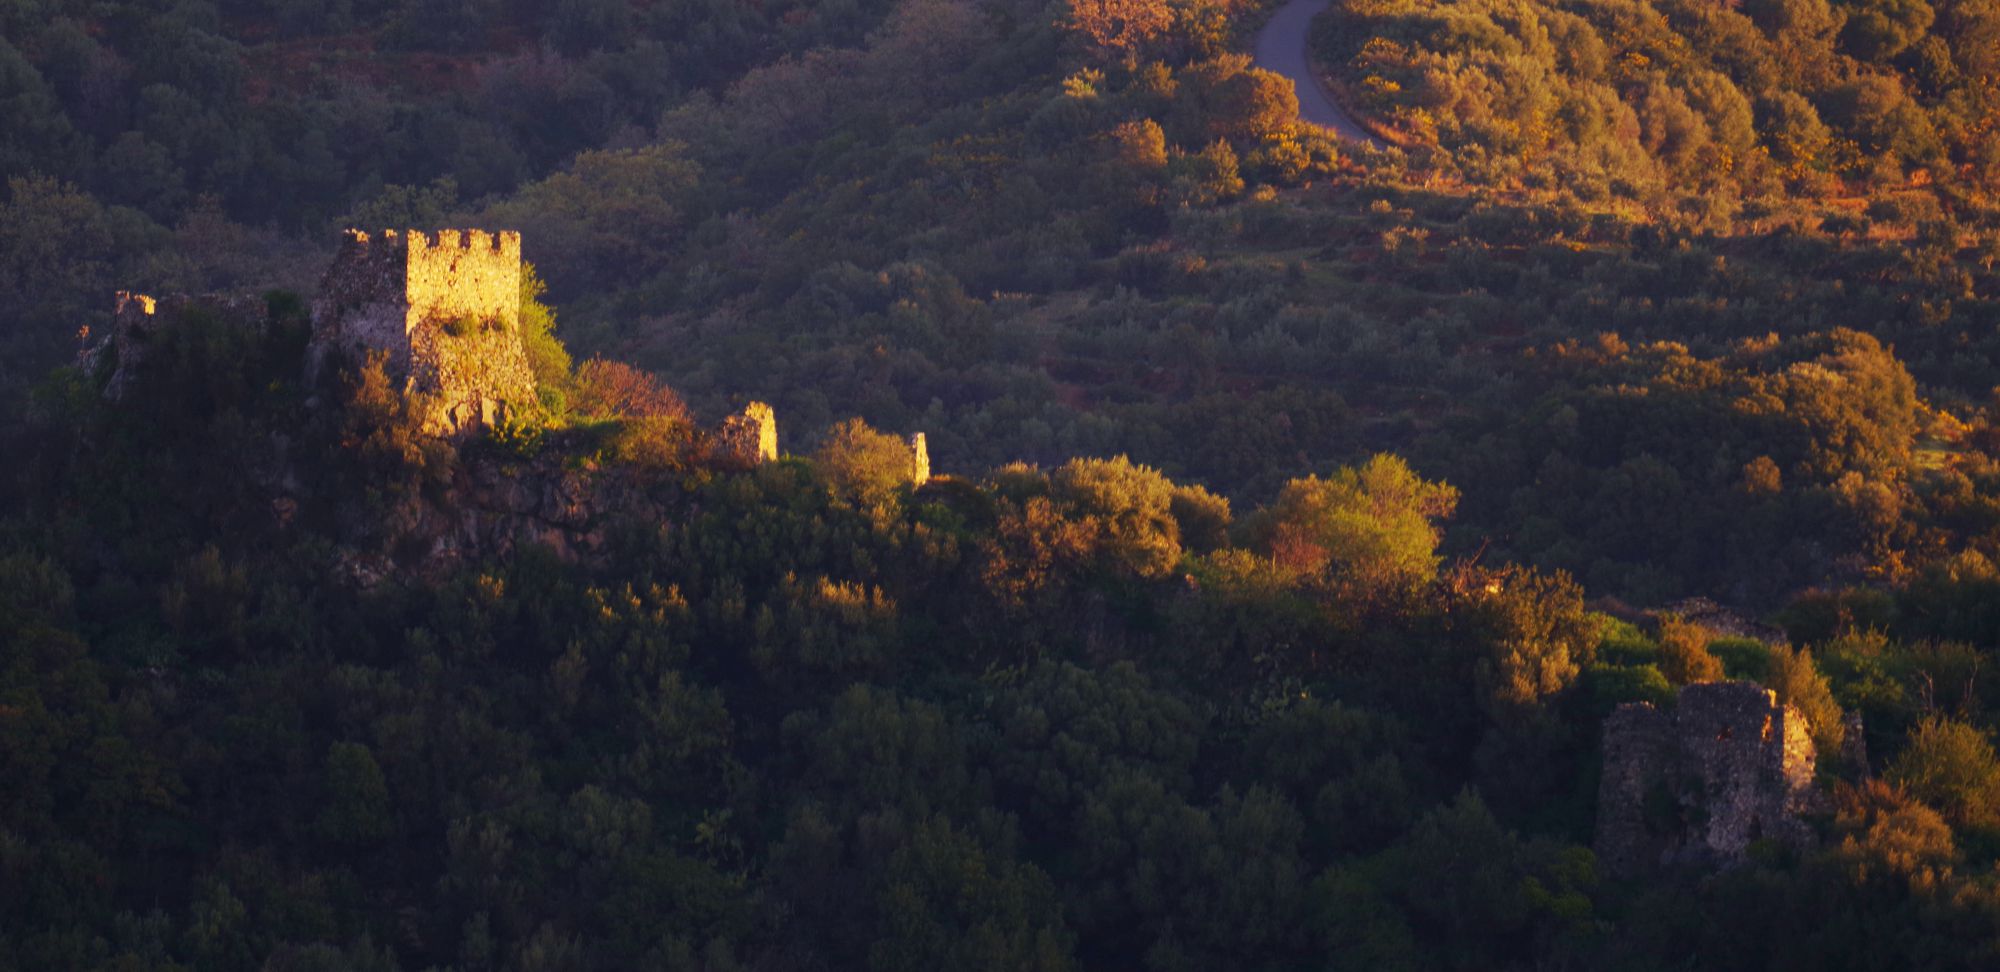 Γύθειο topoguide: Το κάστρο της Μπαρδούνιας